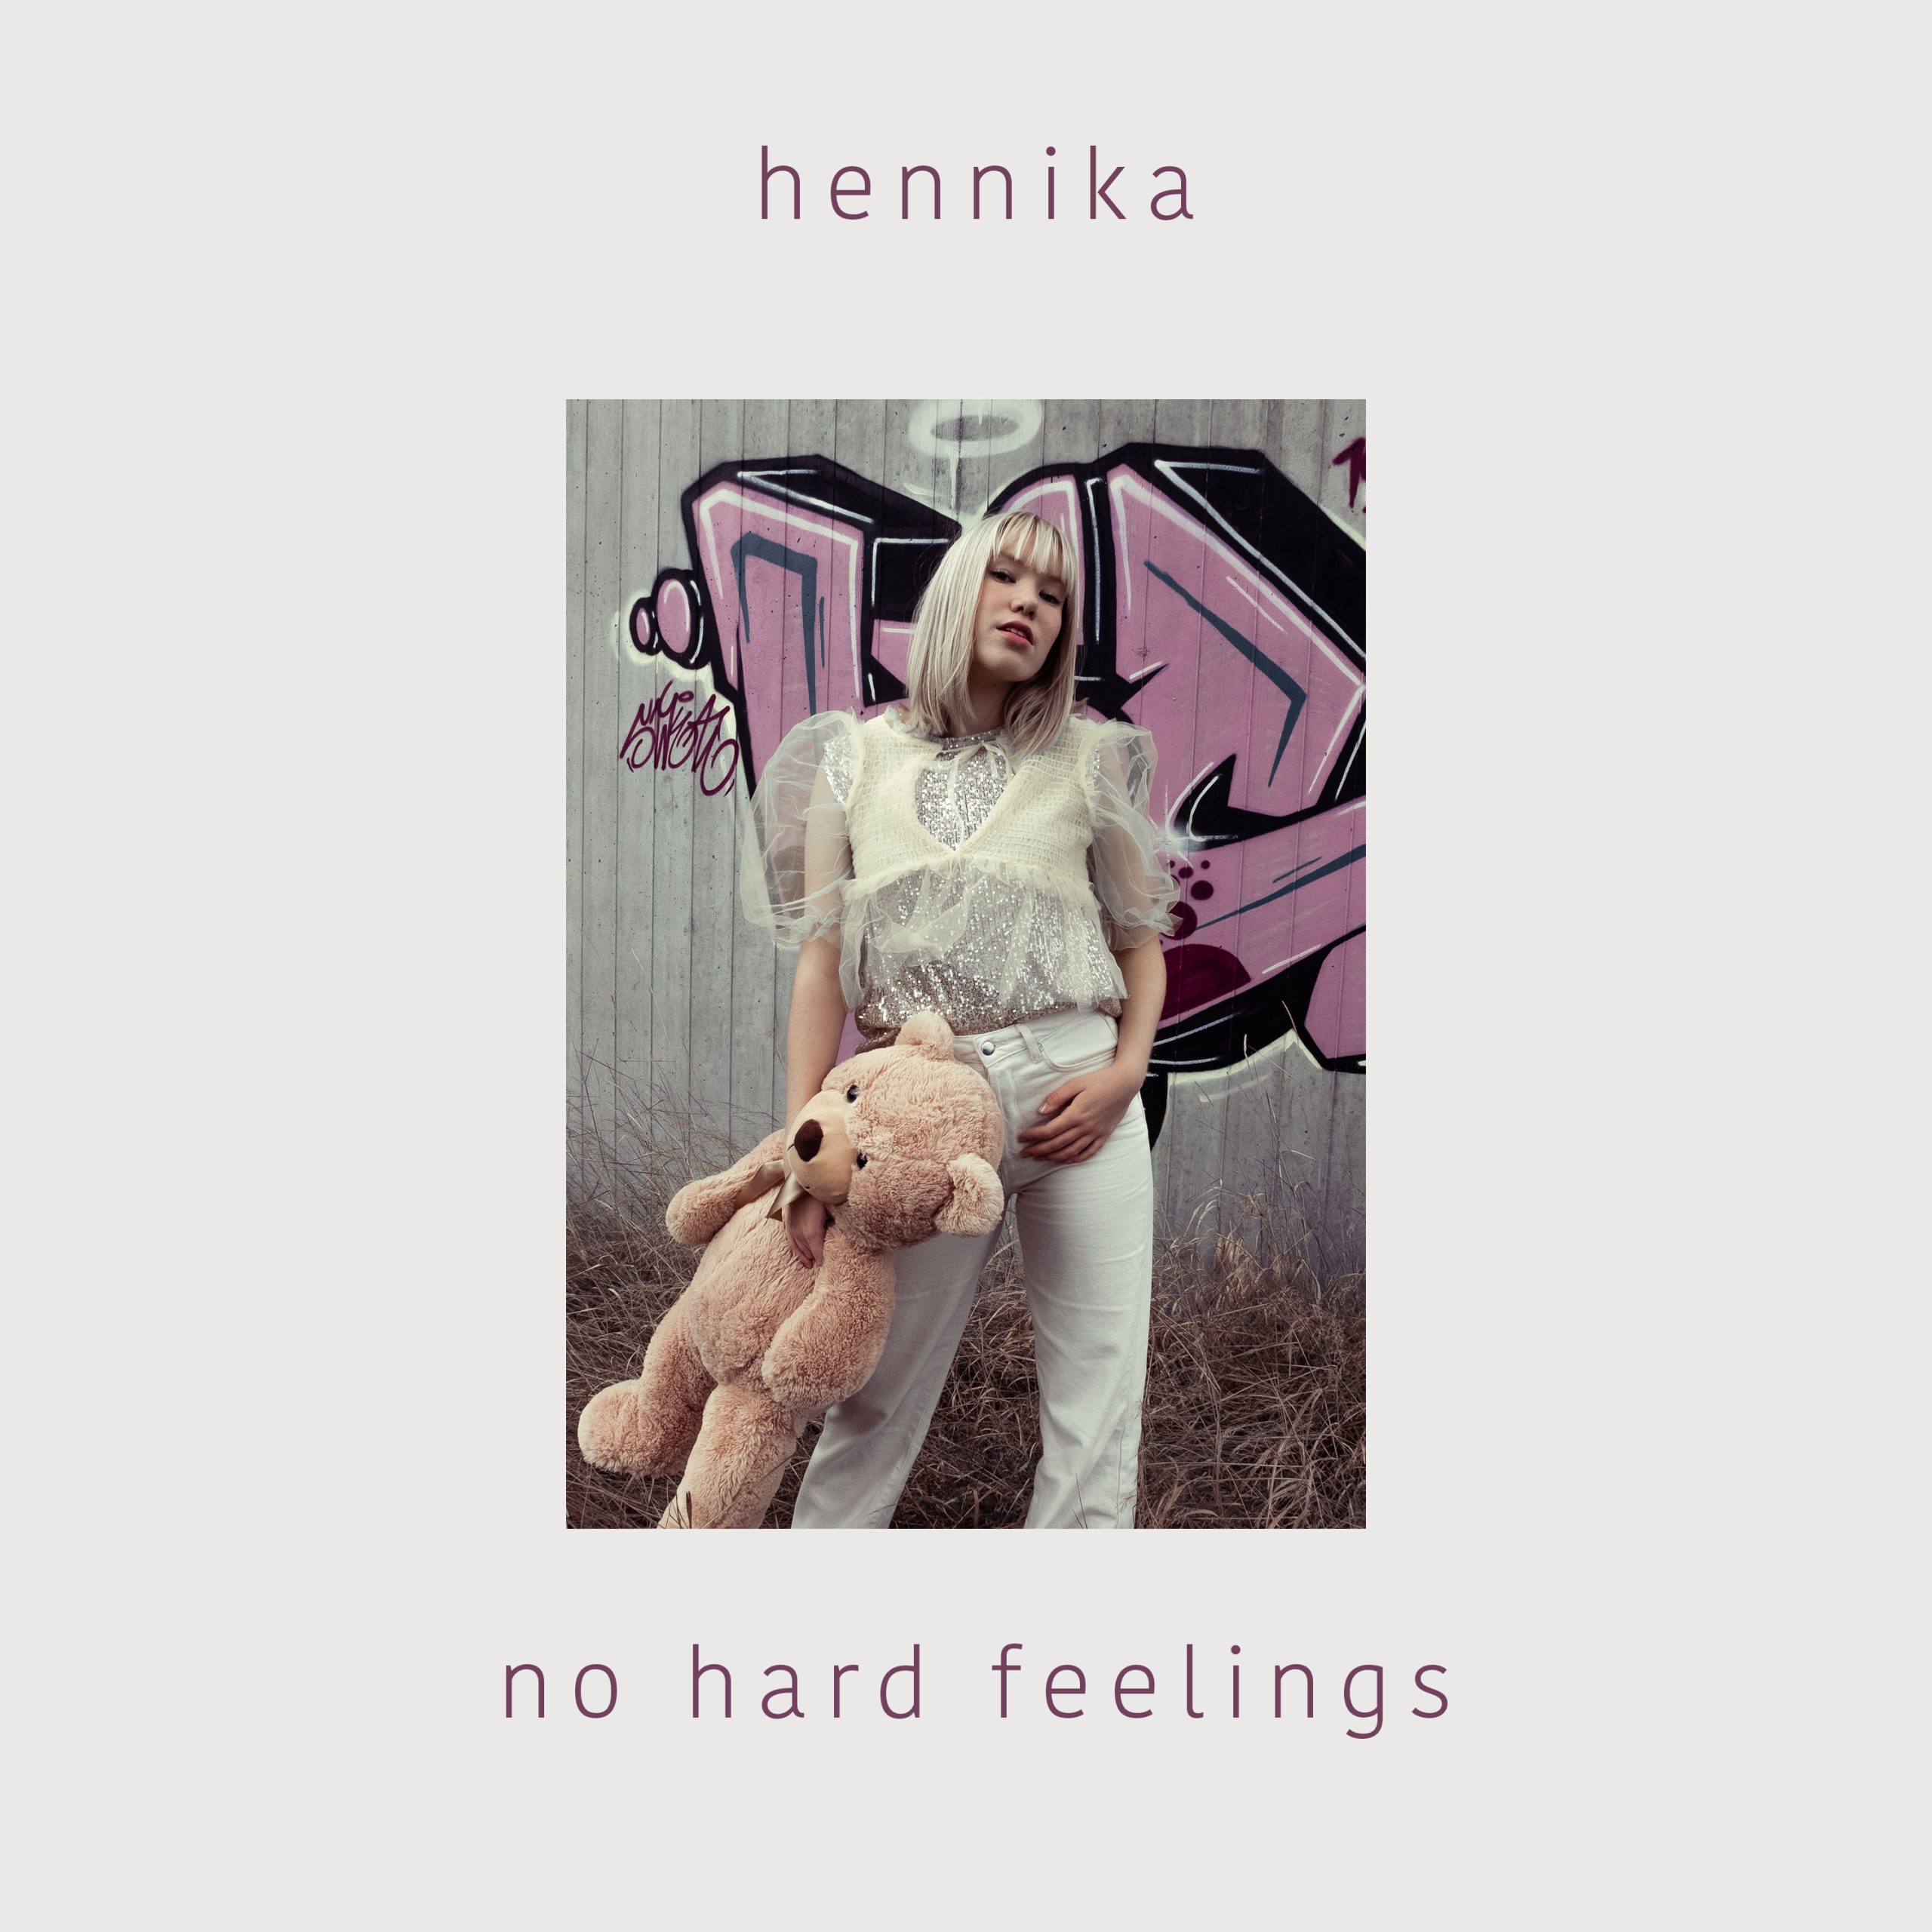 Viser coveret til Hennika sin nyeste låt No hard feelings. Hun står foran grafitti og holder en stor teddybjørn i hånden.